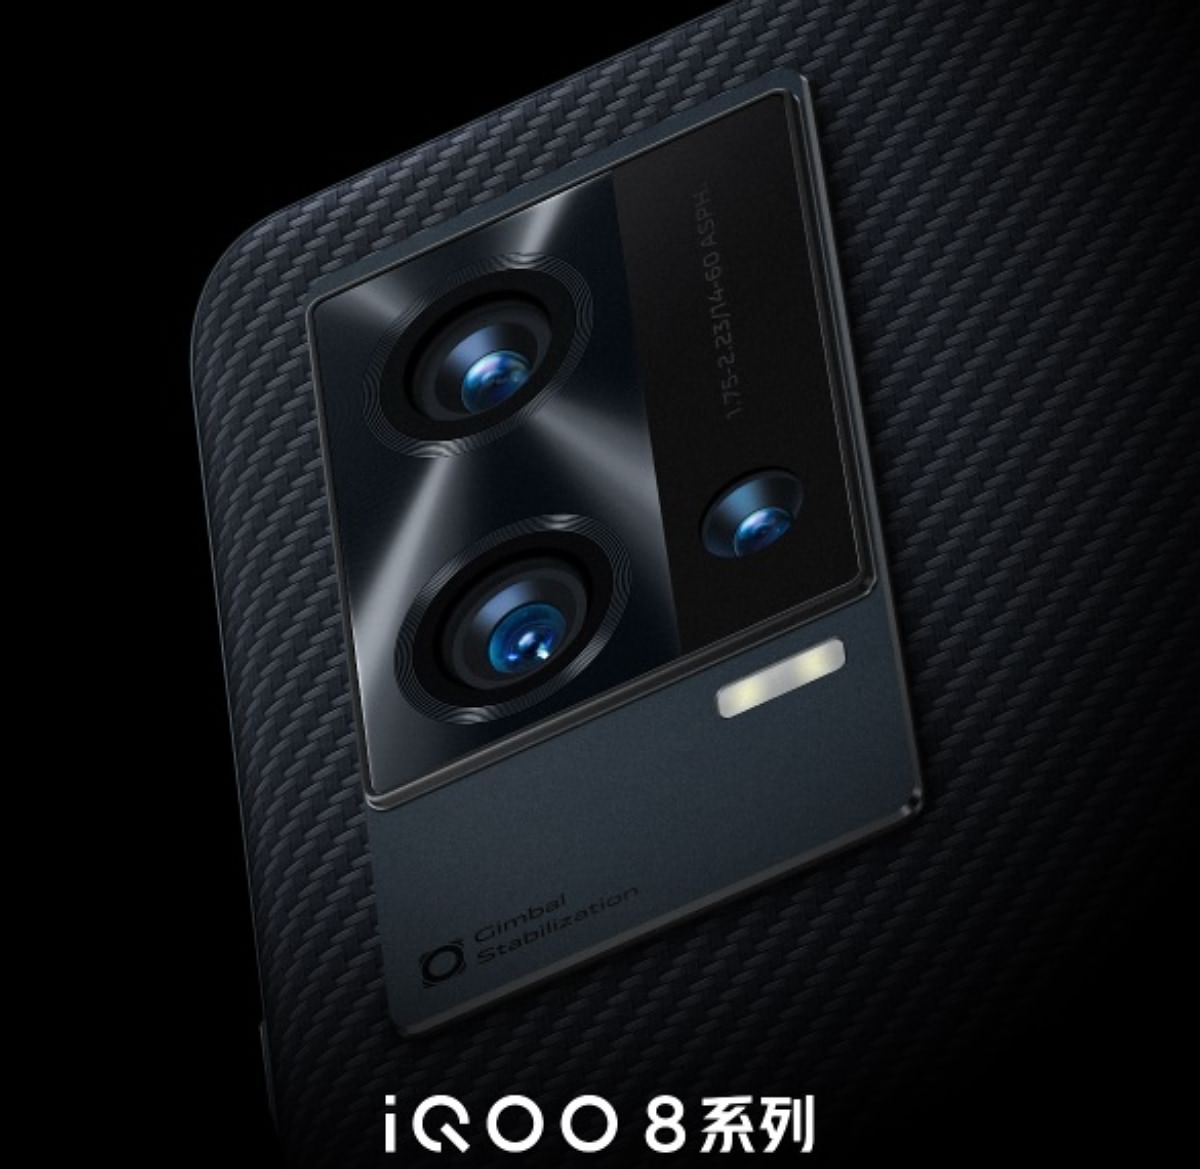 دوربین iQOO 8 شامل سنسورهای ۴۸ و ۵۰ مگاپیکسلی با لرزشگیر گیمبال خواهد بود